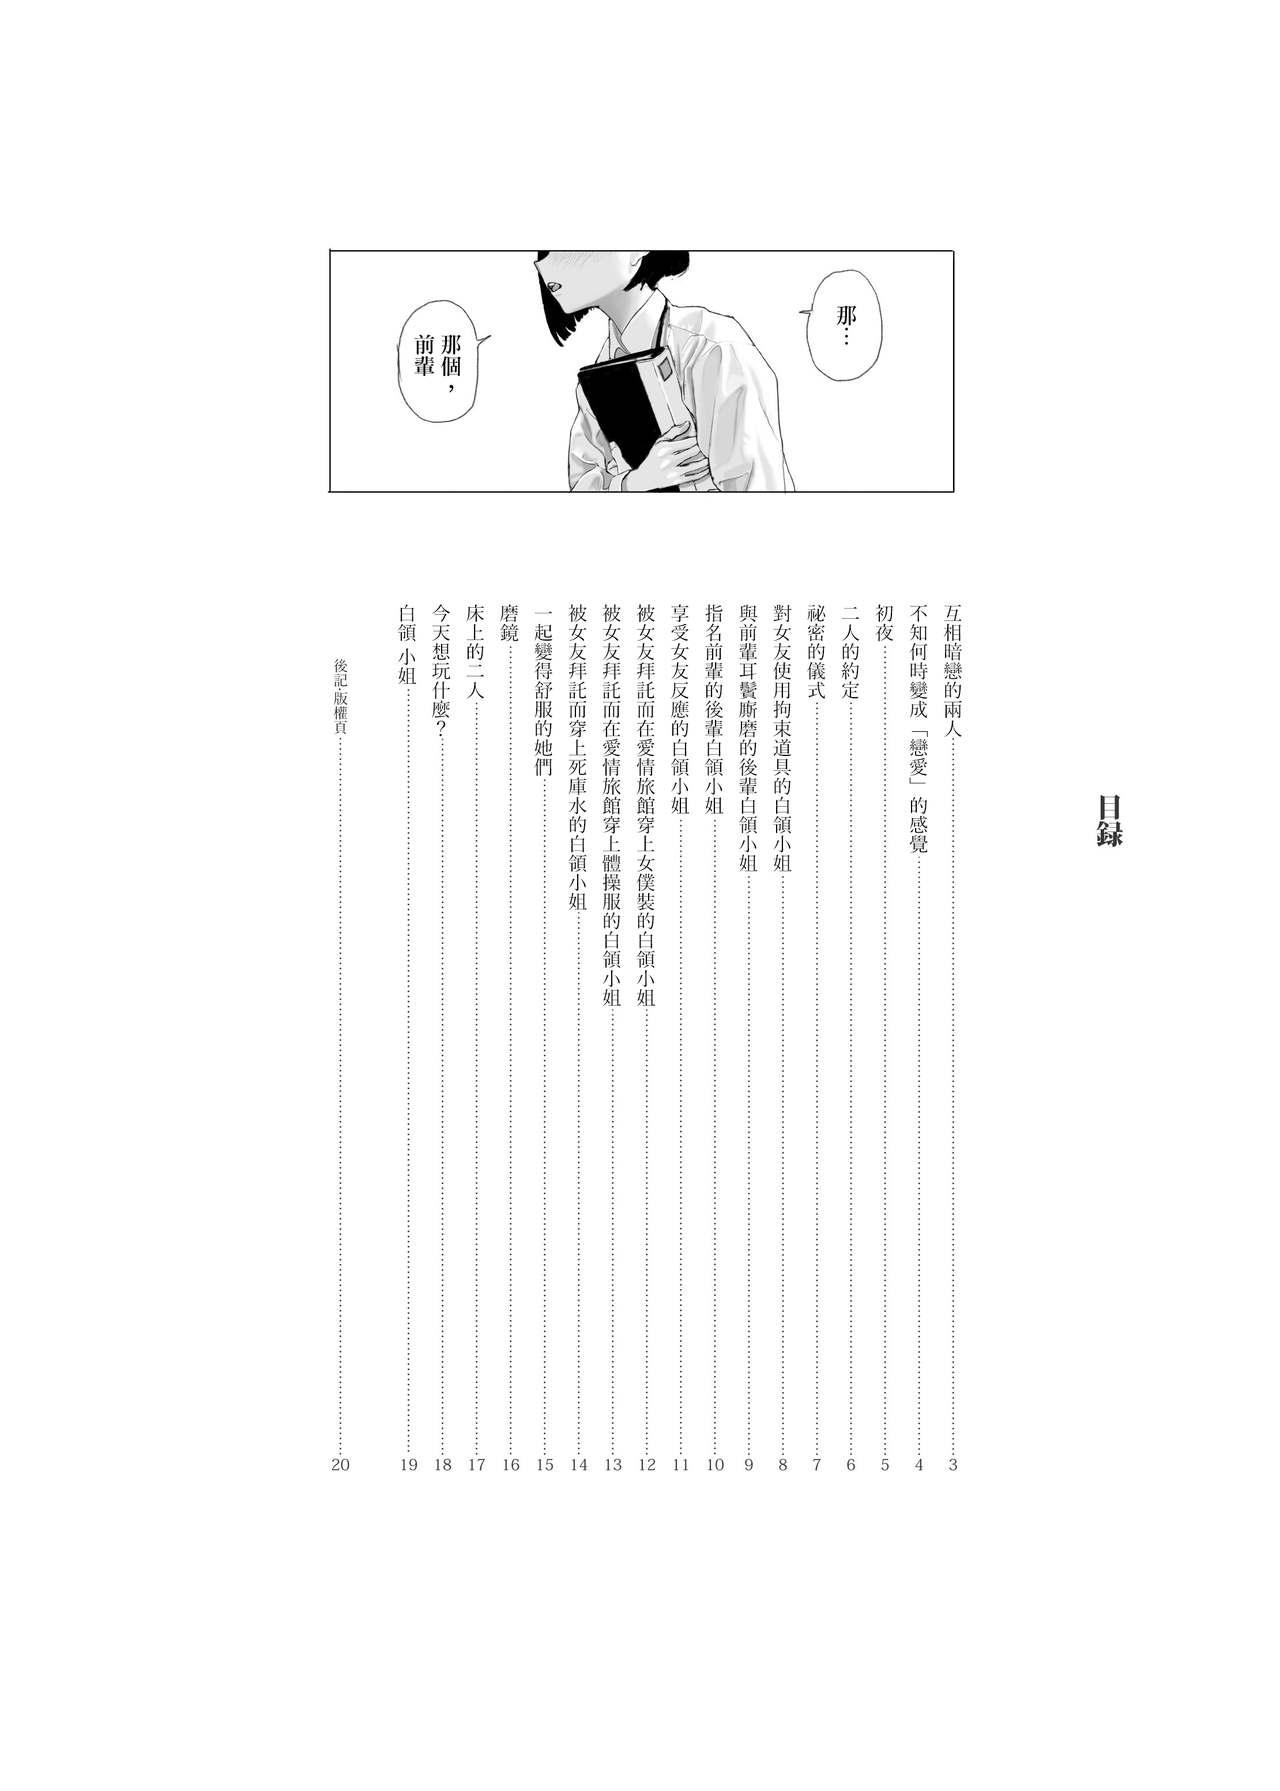 Parody Josei Douseiai Matome 2 丨 女性同性愛合集 2 - Original Twinks - Page 5